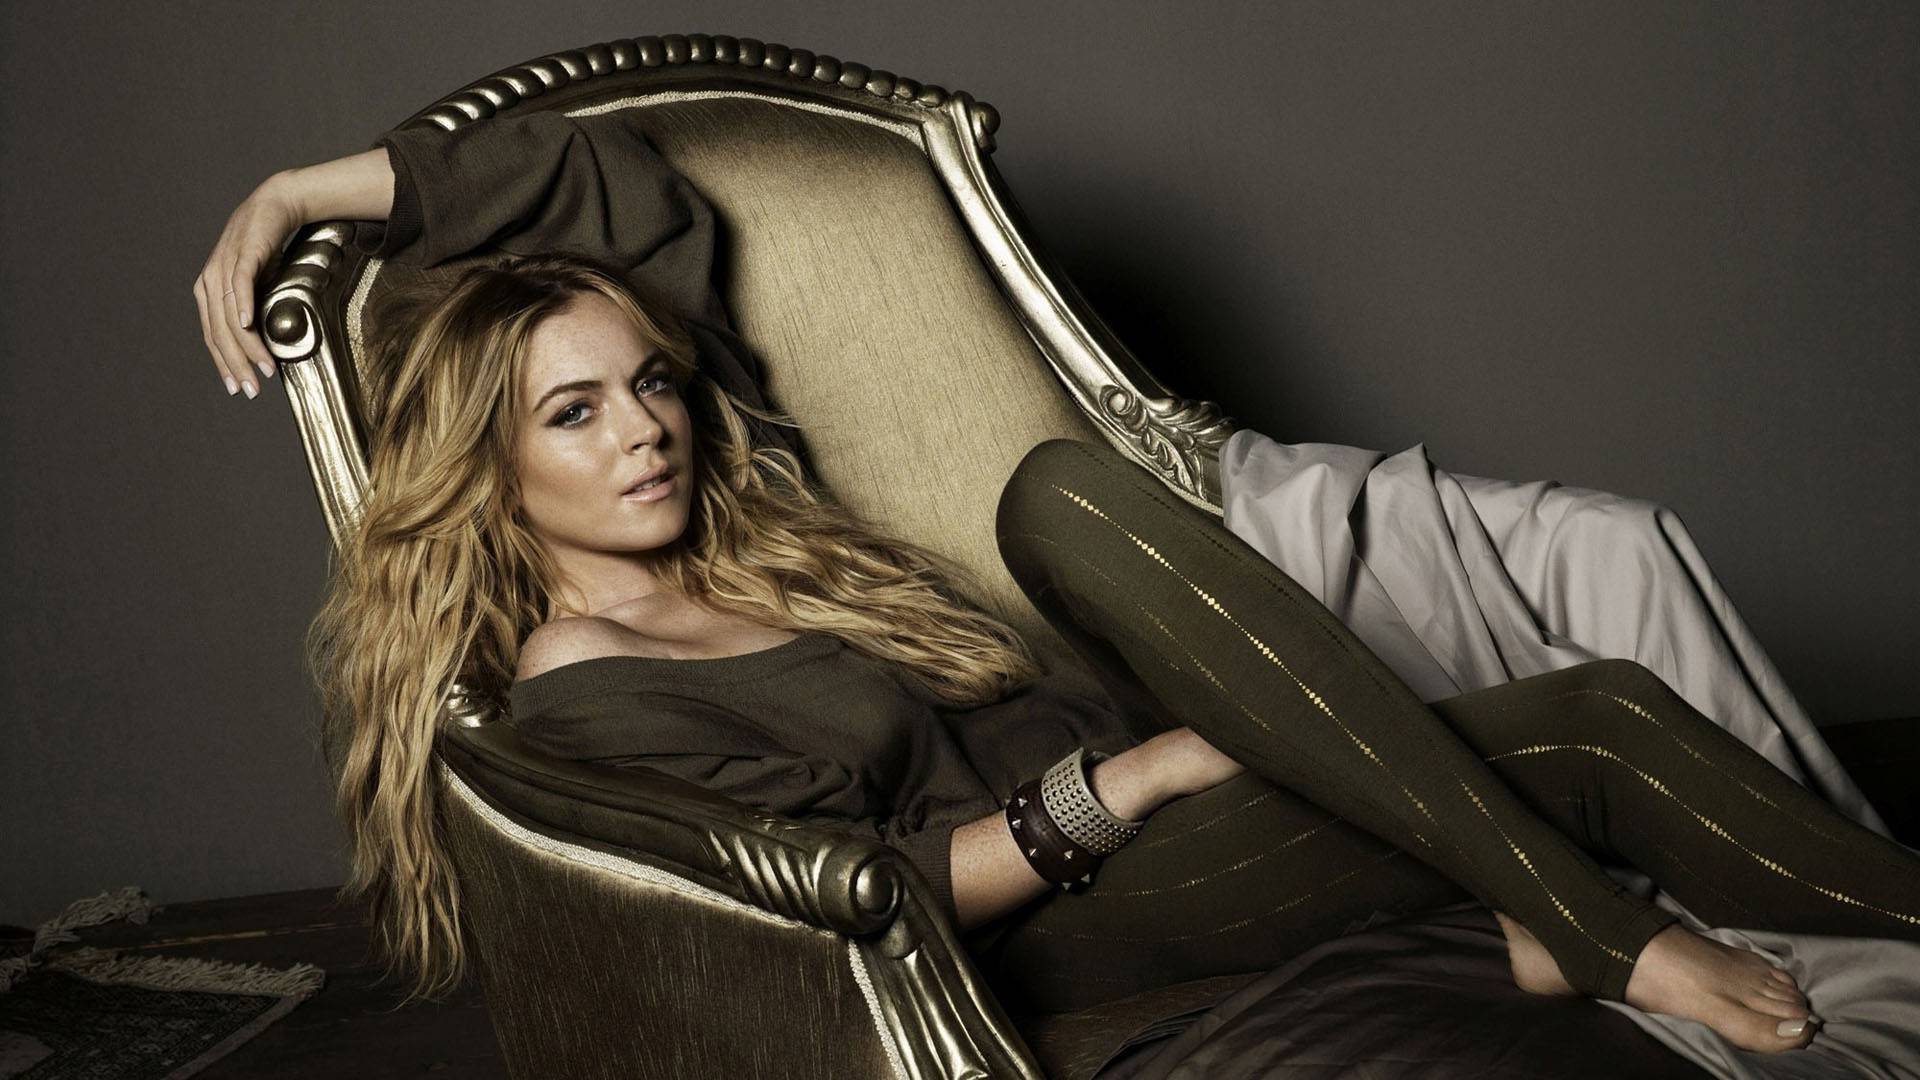 Glumica Lindsay Lohan se opija i puši ‘kao Turčin’ u trudnoći